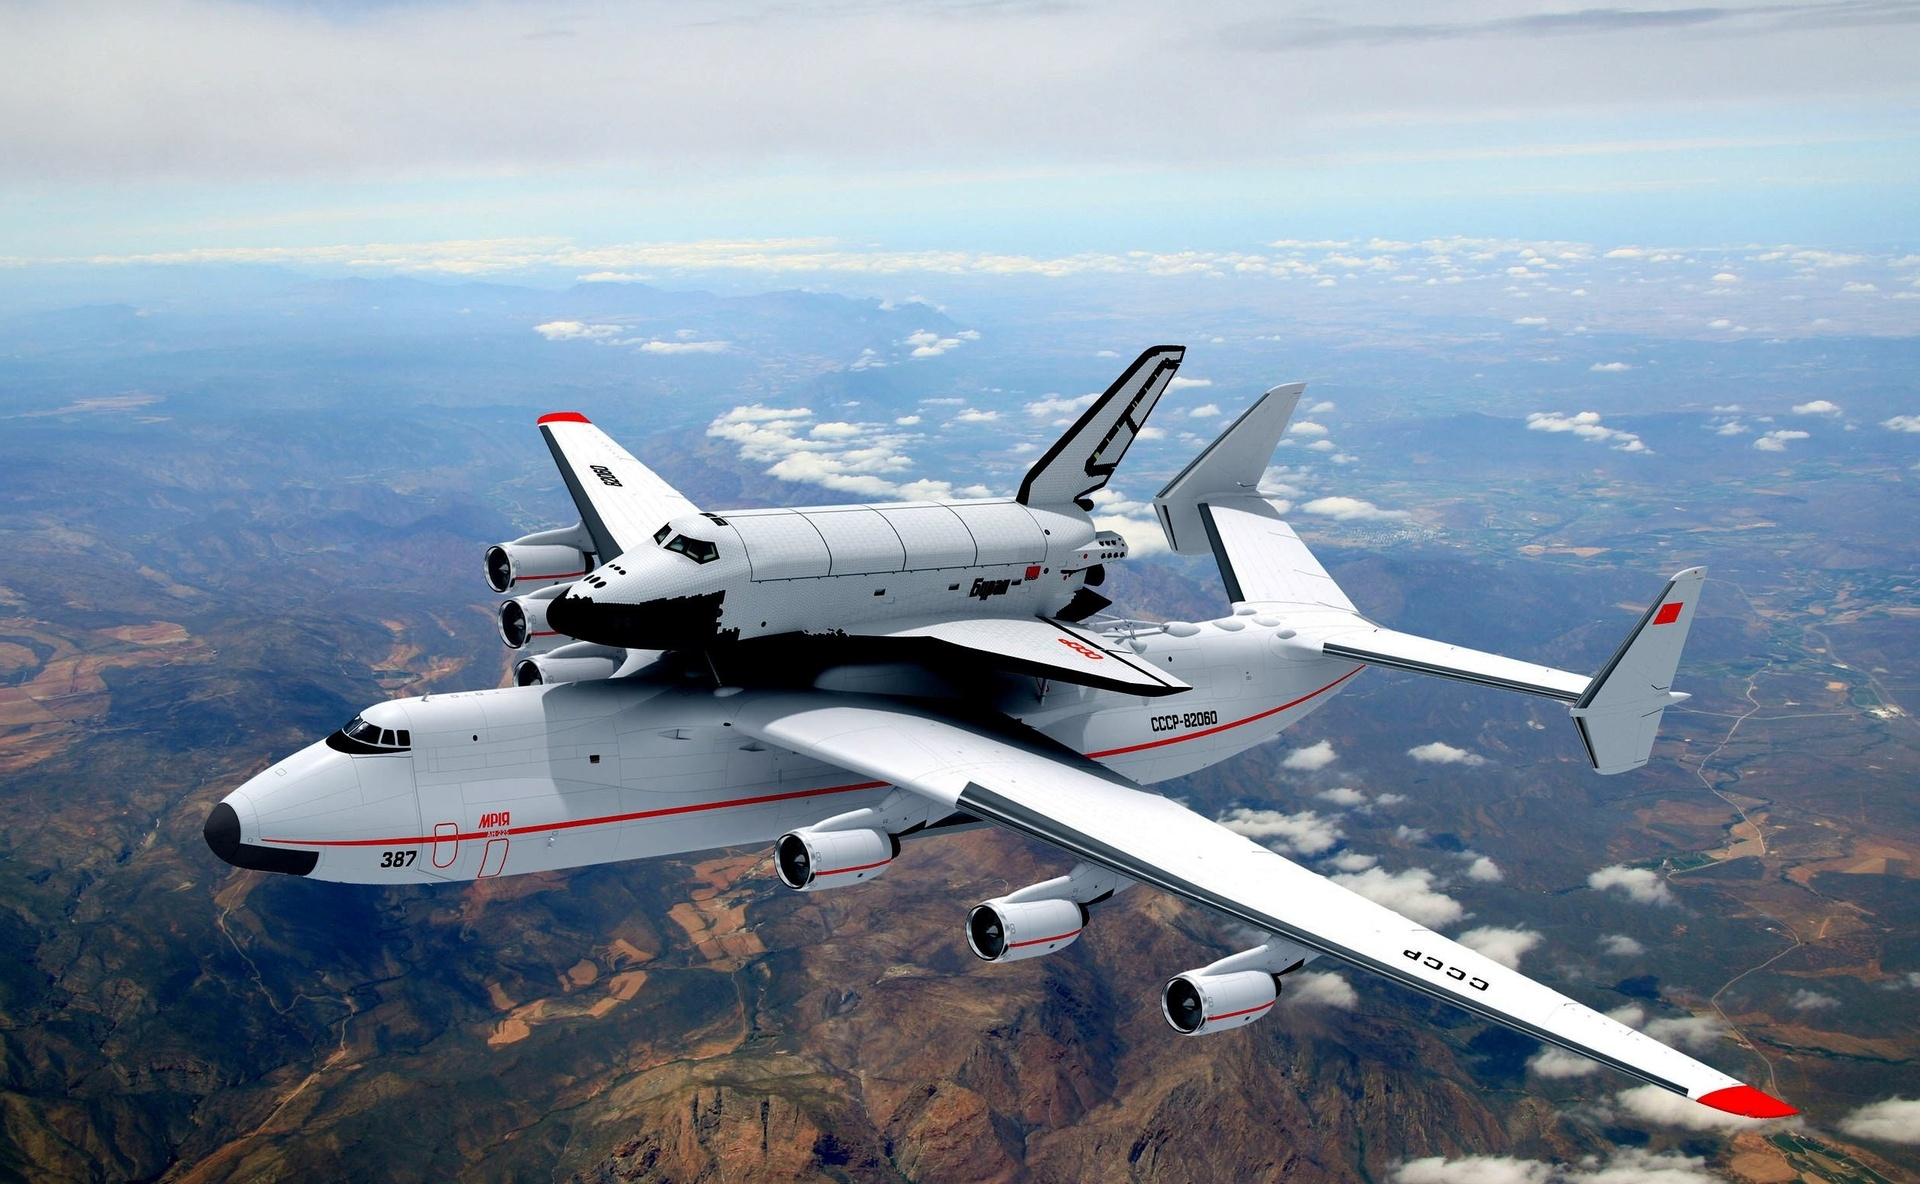 Αυτό είναι το μεγαλύτερο αεροπλάνο στον πλανήτη